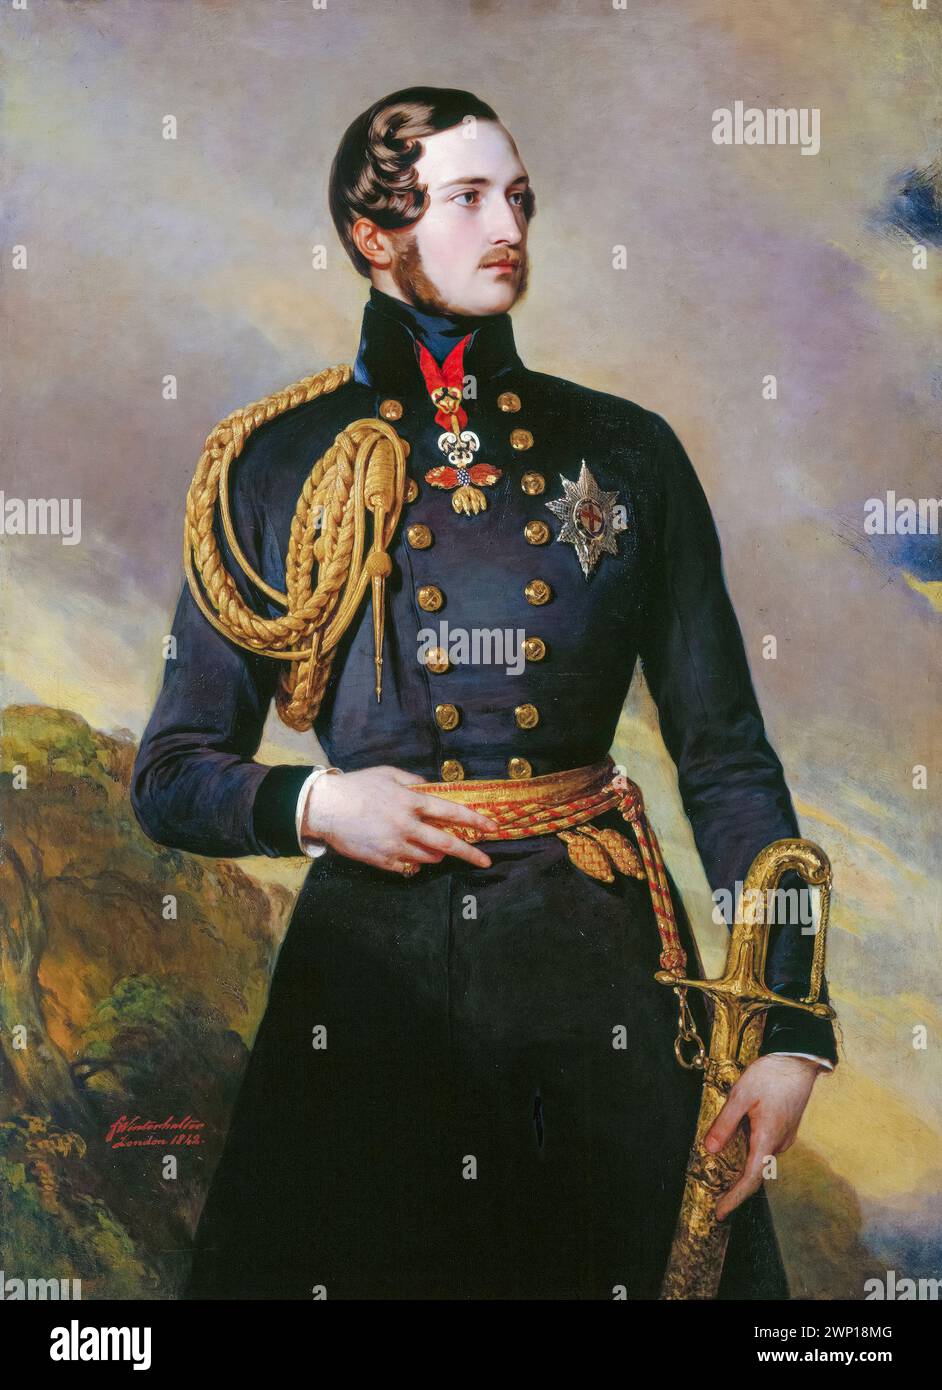 Prince Albert de Saxe-Cobourg et Gotha (1819-1861) Consort of the British Monarch 1840-1861, portrait peint à l'huile sur toile par Frans Xaver Winterhalter, 1842 Banque D'Images